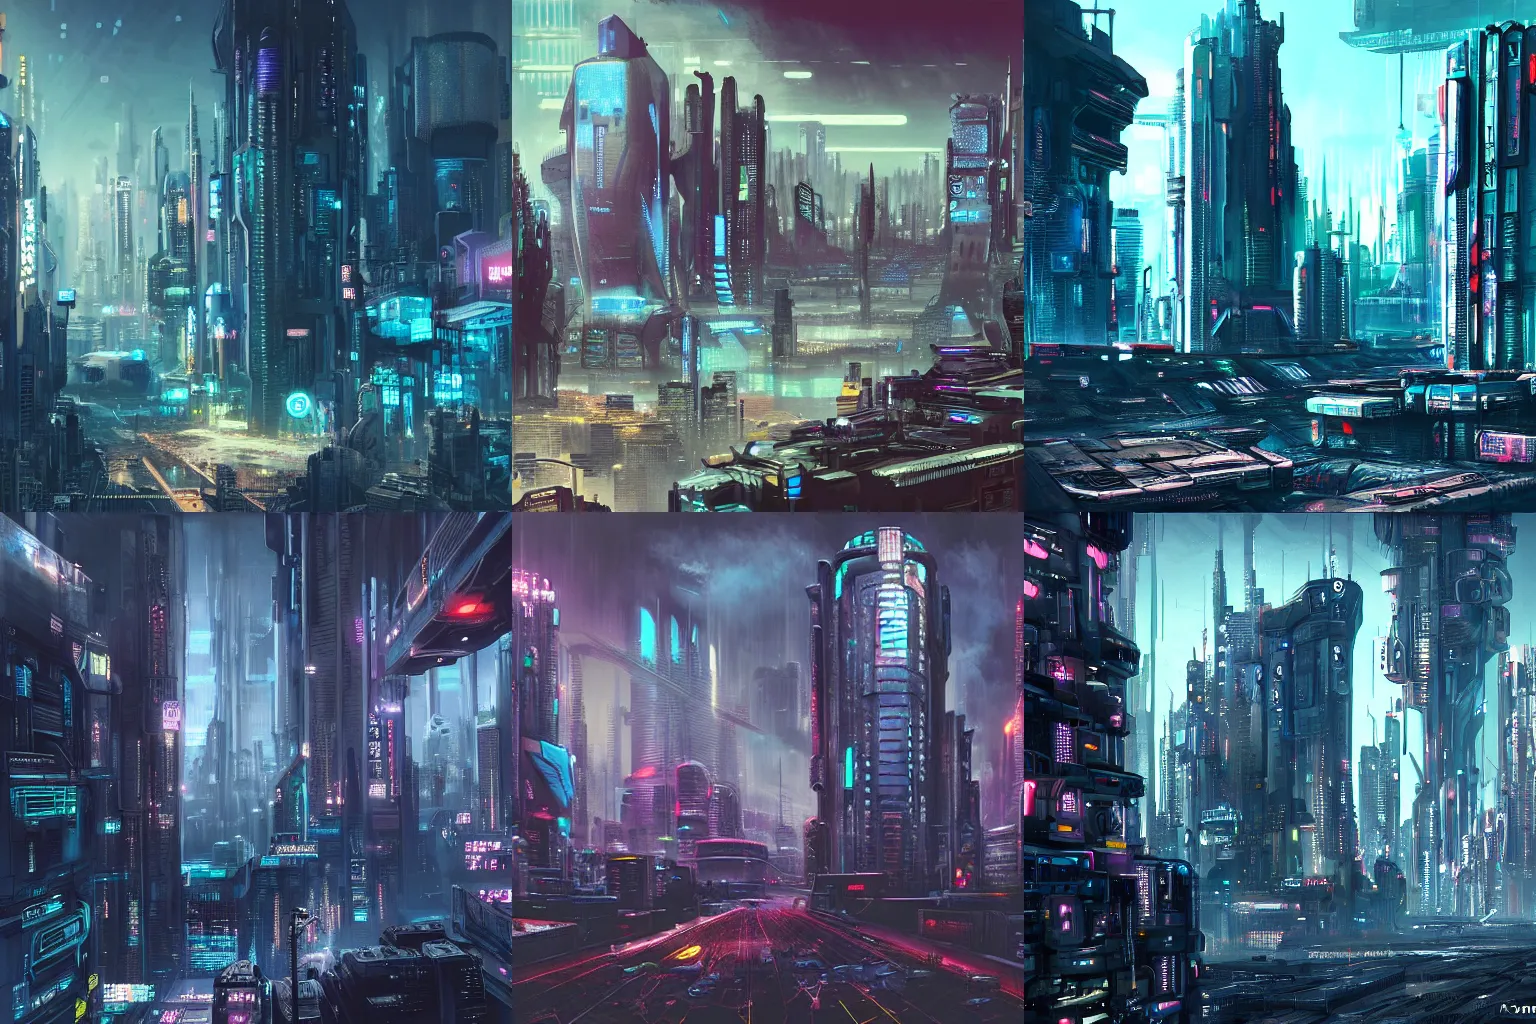 Prompt: futuristic dystopian cyberpunk cityscape